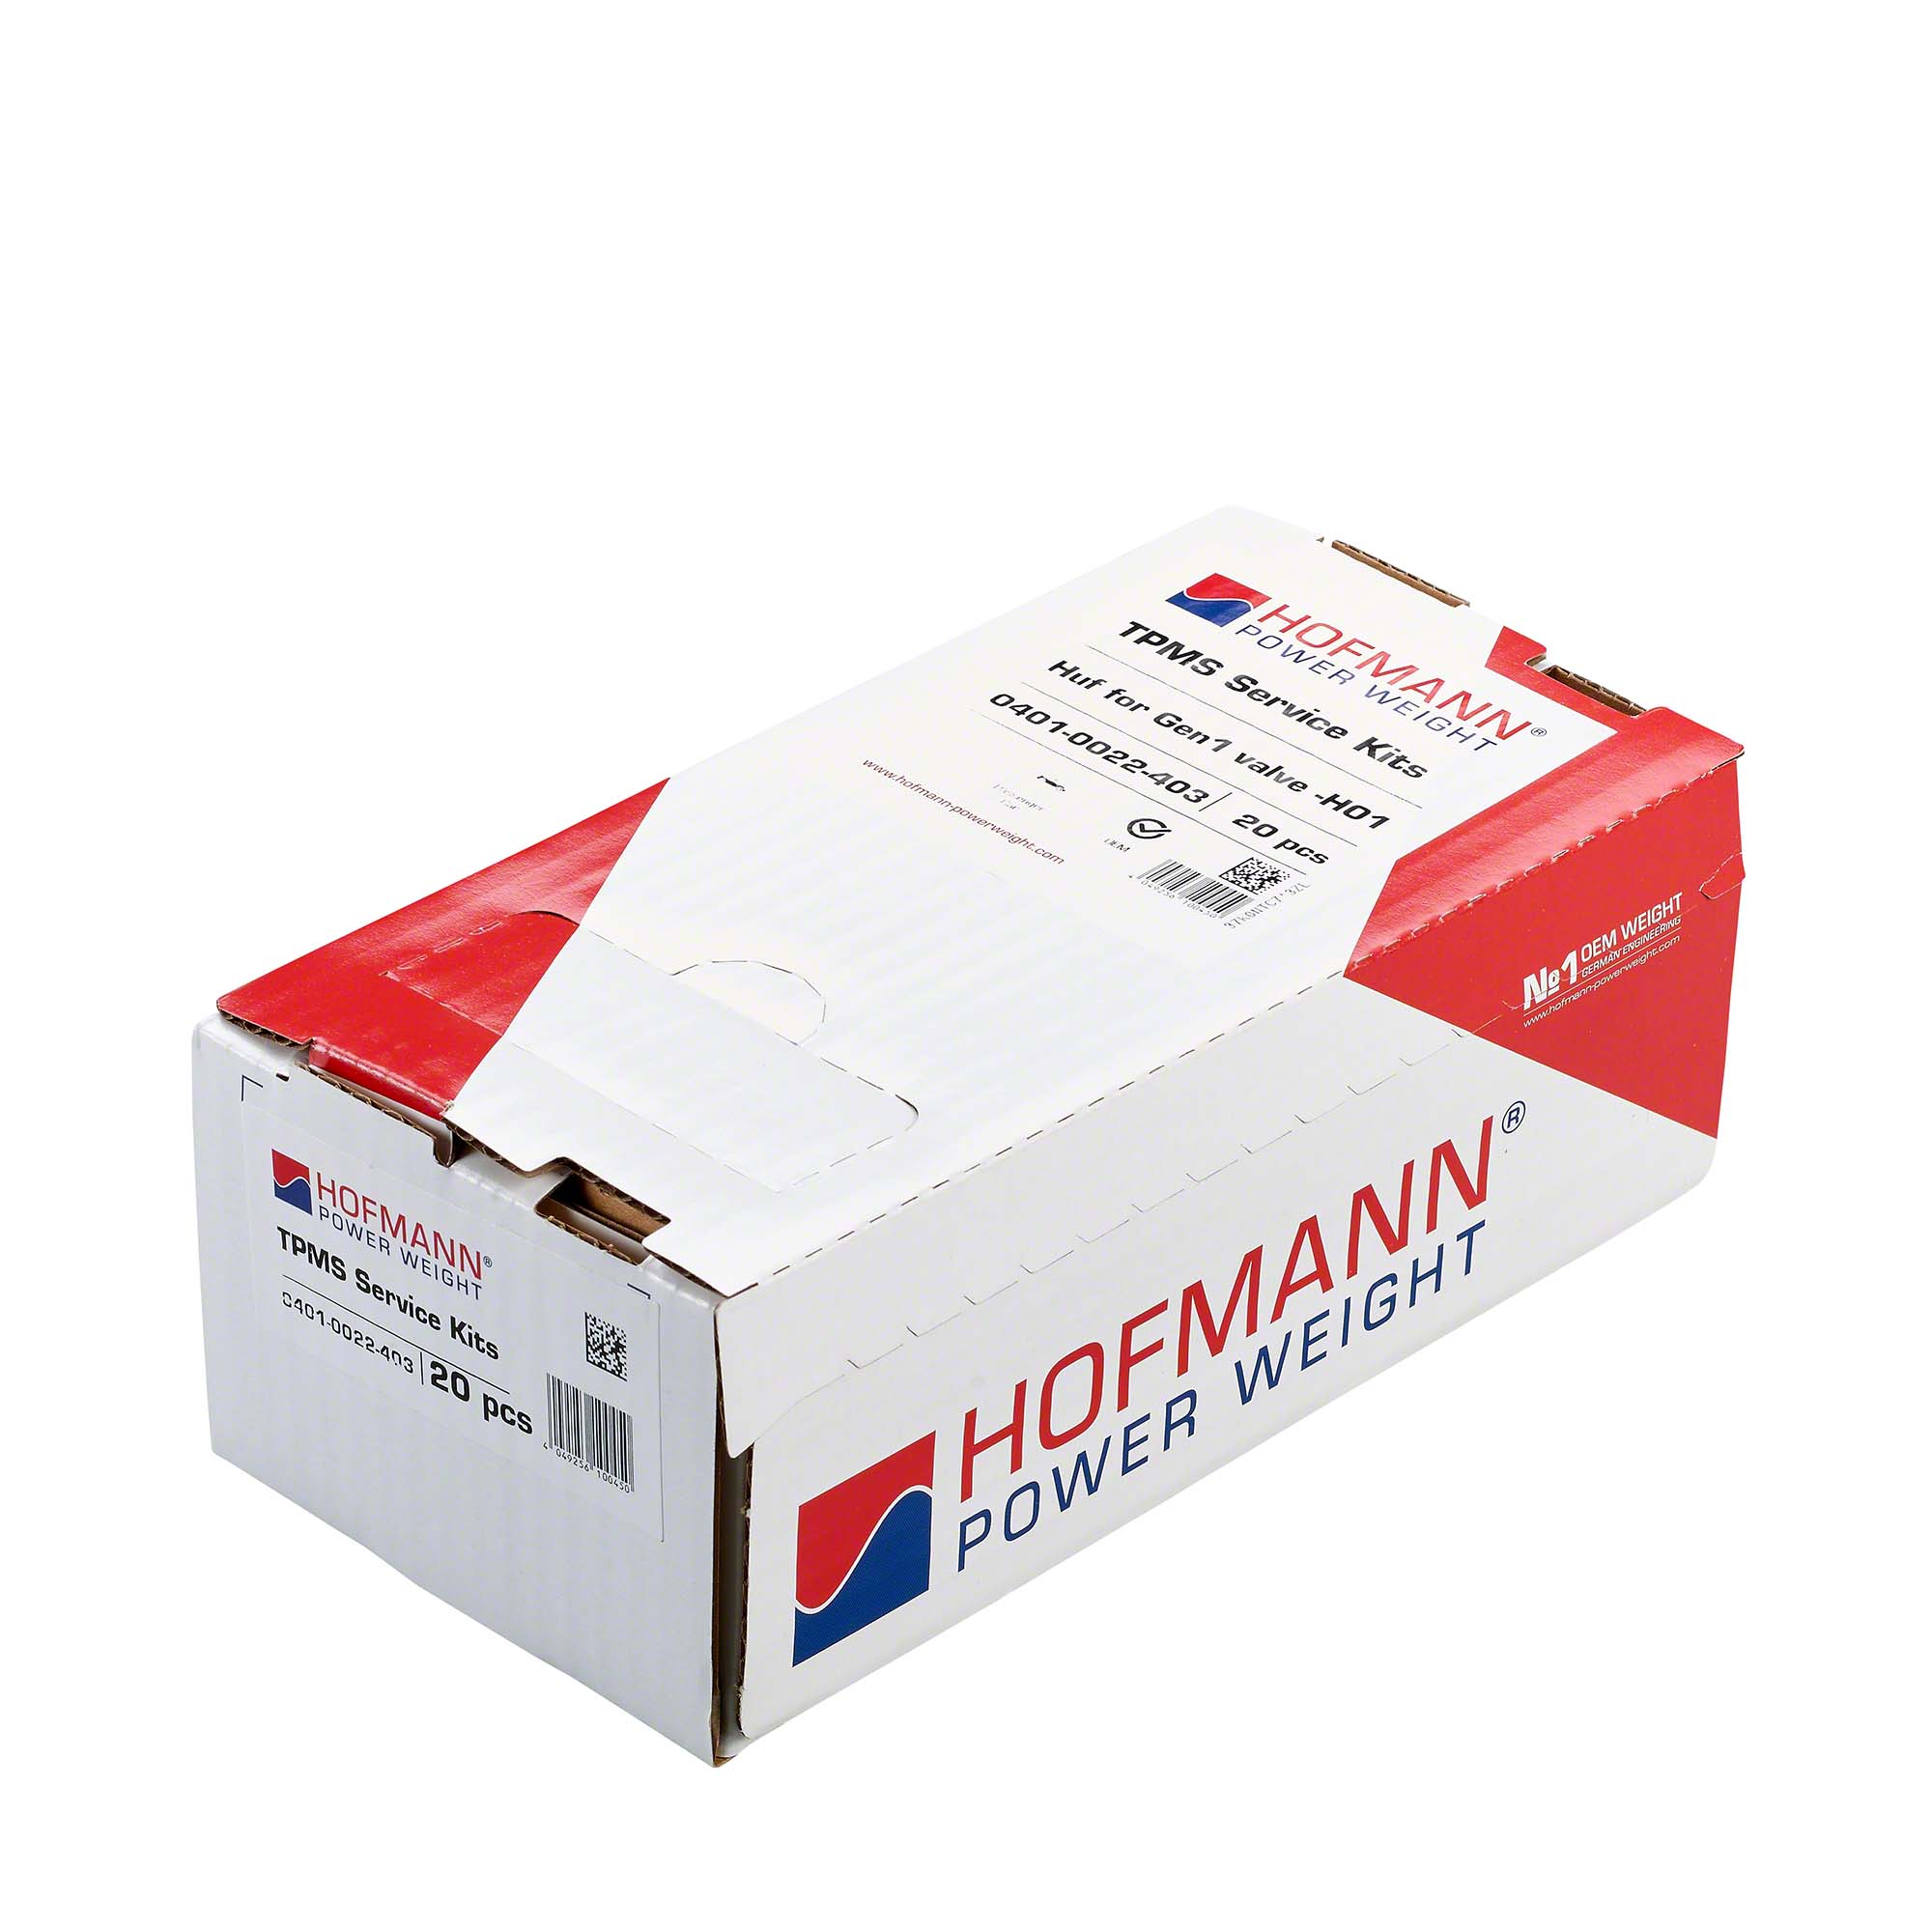 HOFMANN POWER WEIGHT-RDKS Service-Kit - H01-0401-0022-403